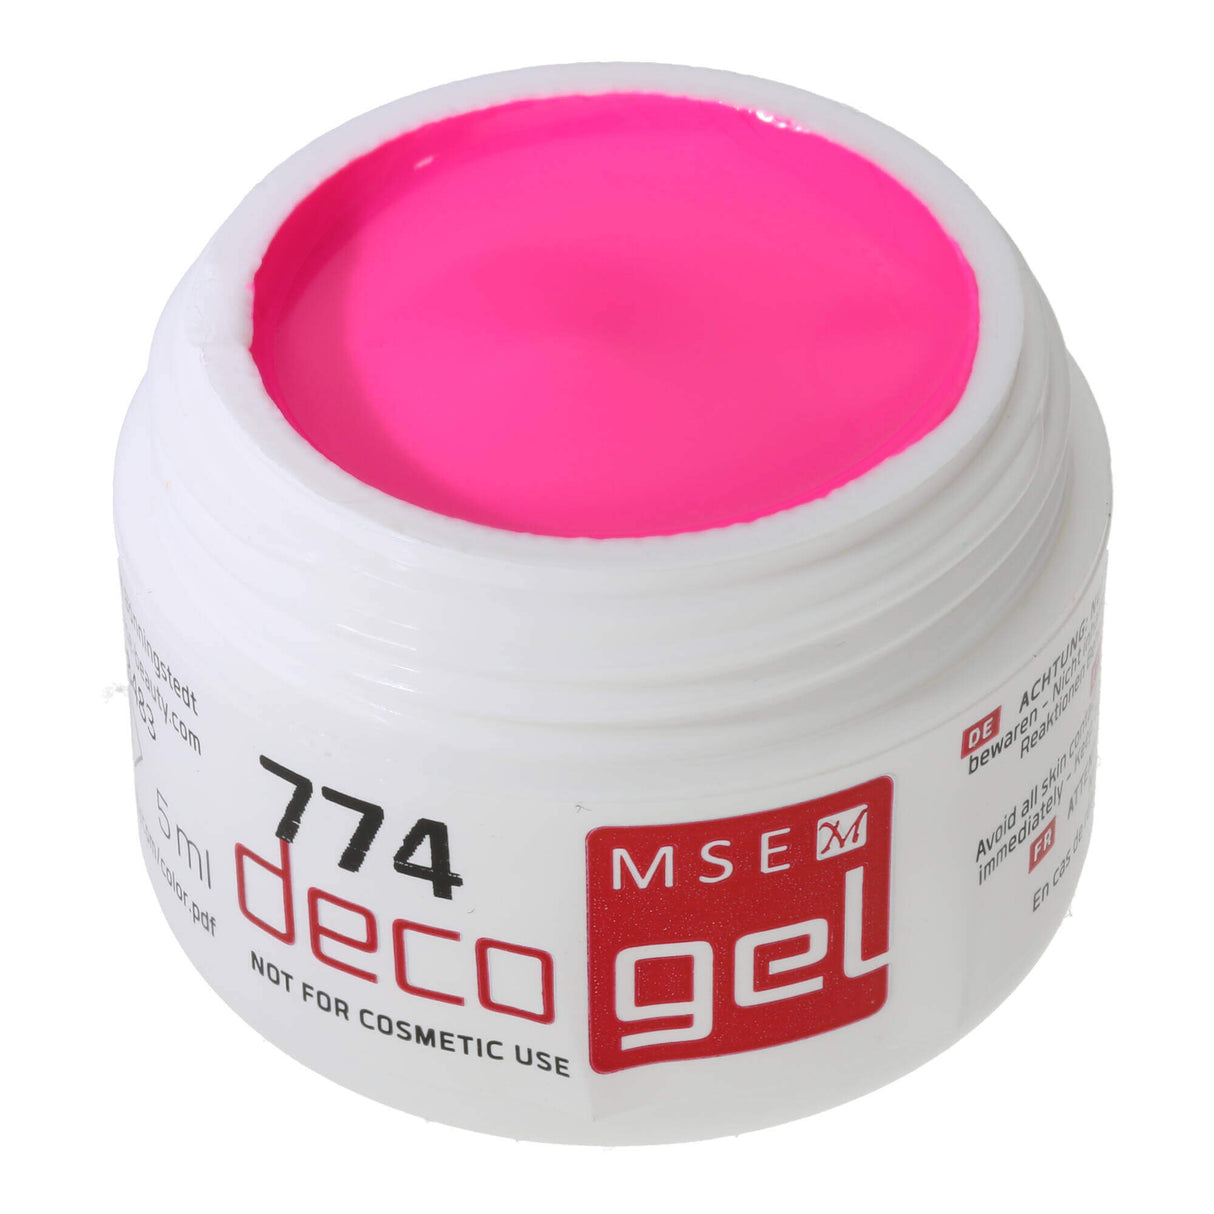 # 774 Premium-DECO Color Gel 5ml Neon PAS POUR USAGE COSMETIQUE